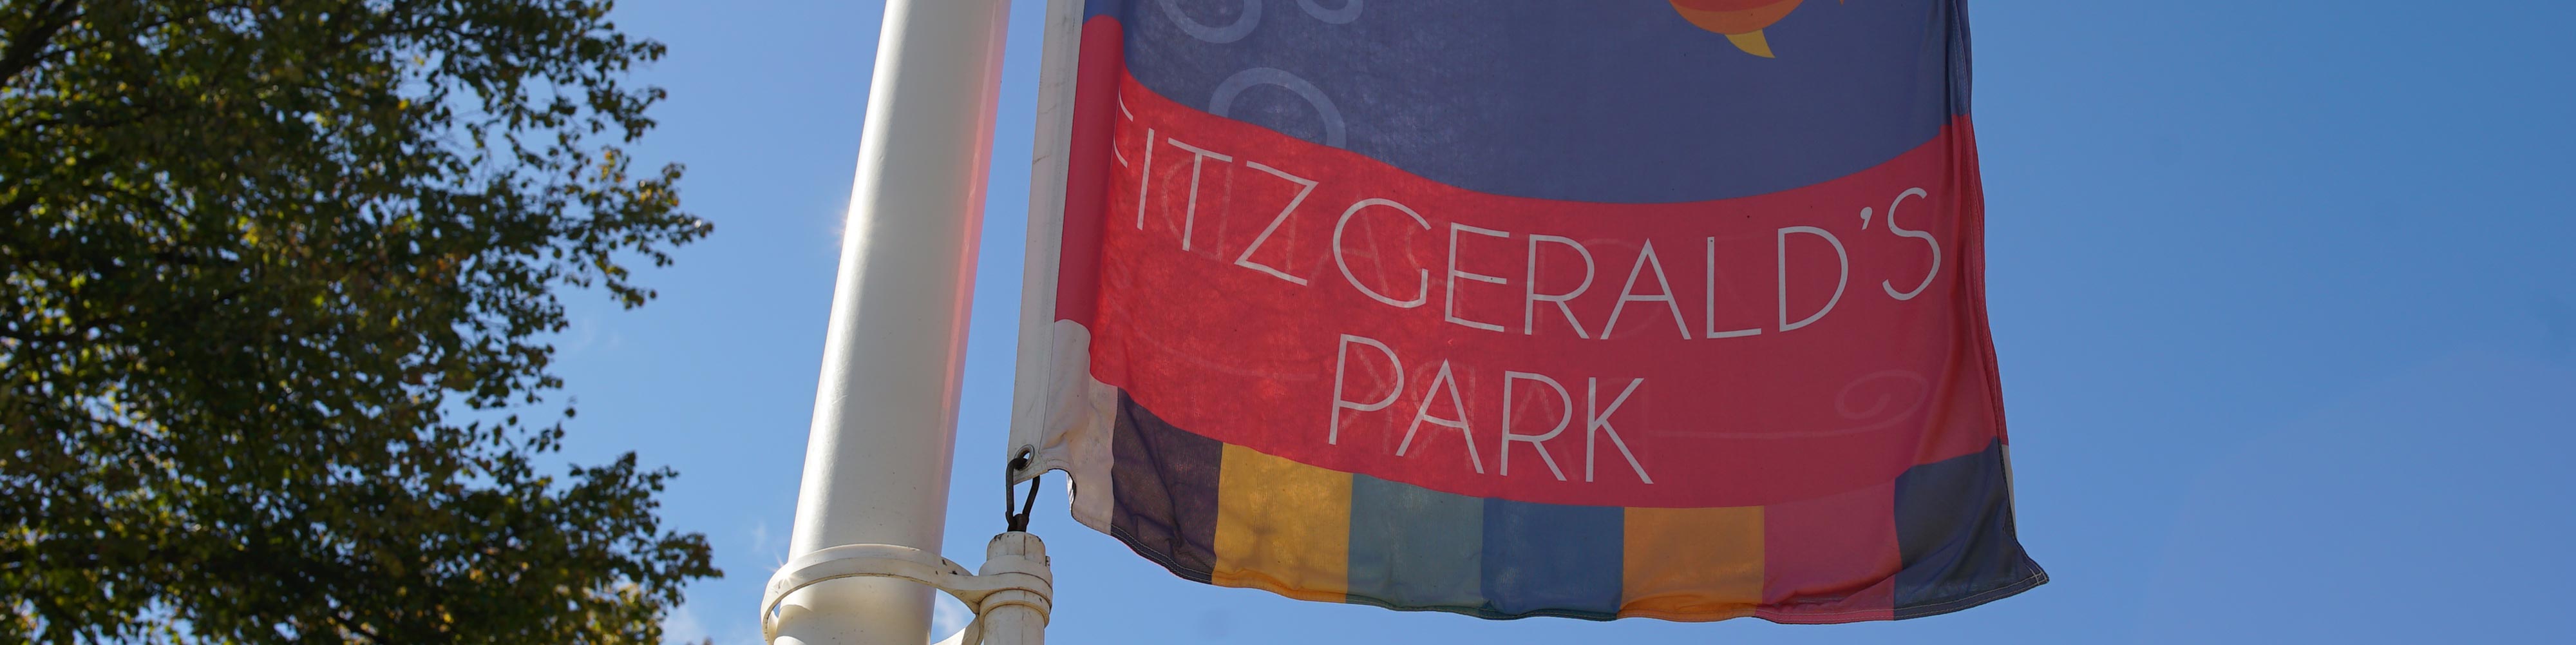 fitzgeralds park flag